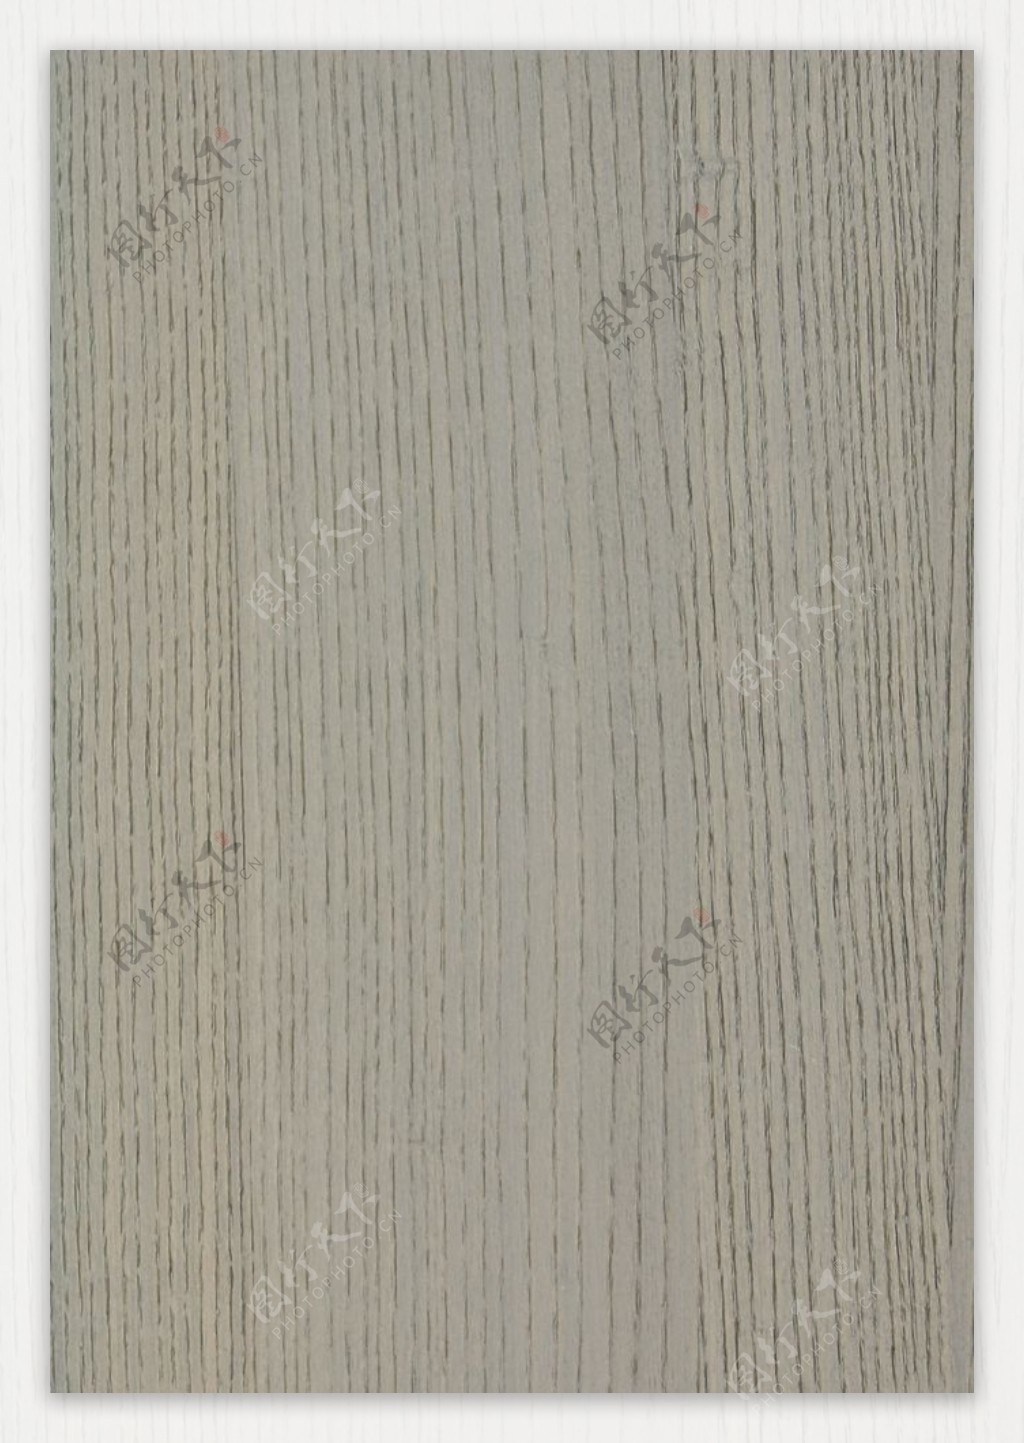 木头木地板木纹贴图木饰图片